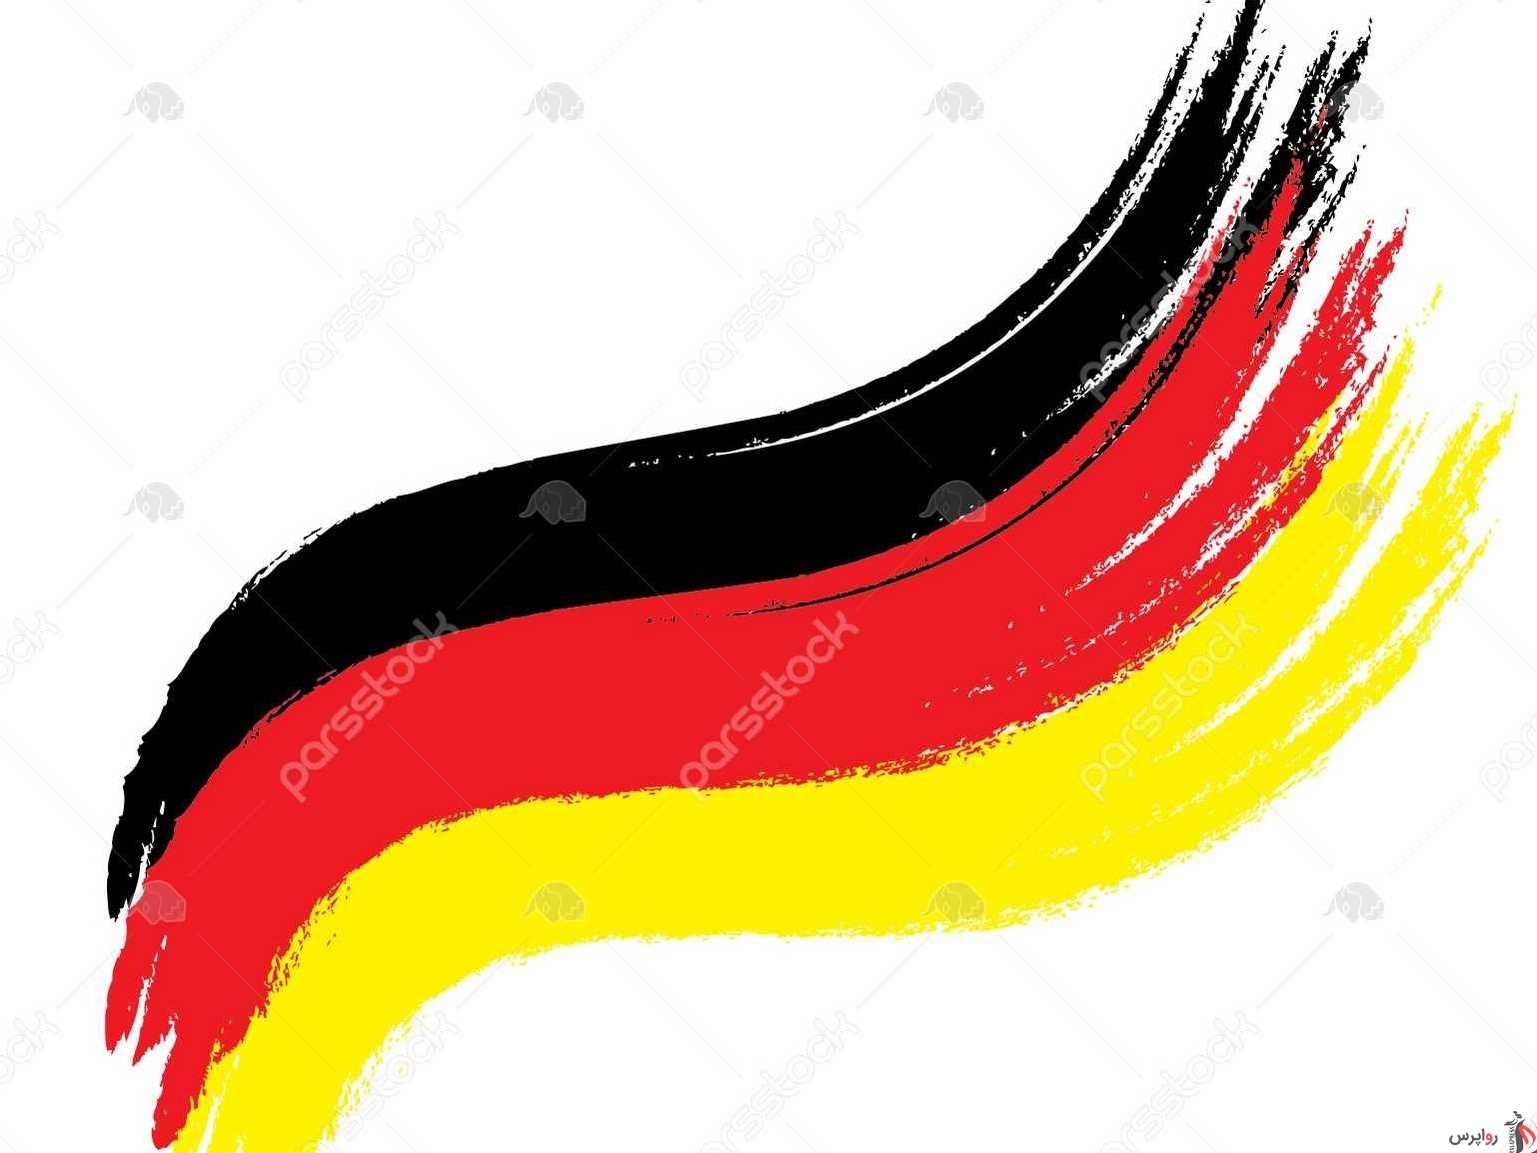 آلمان از اولین تراکنش مالی اروپا با ایران در چارچوب اینستکس خبر داد